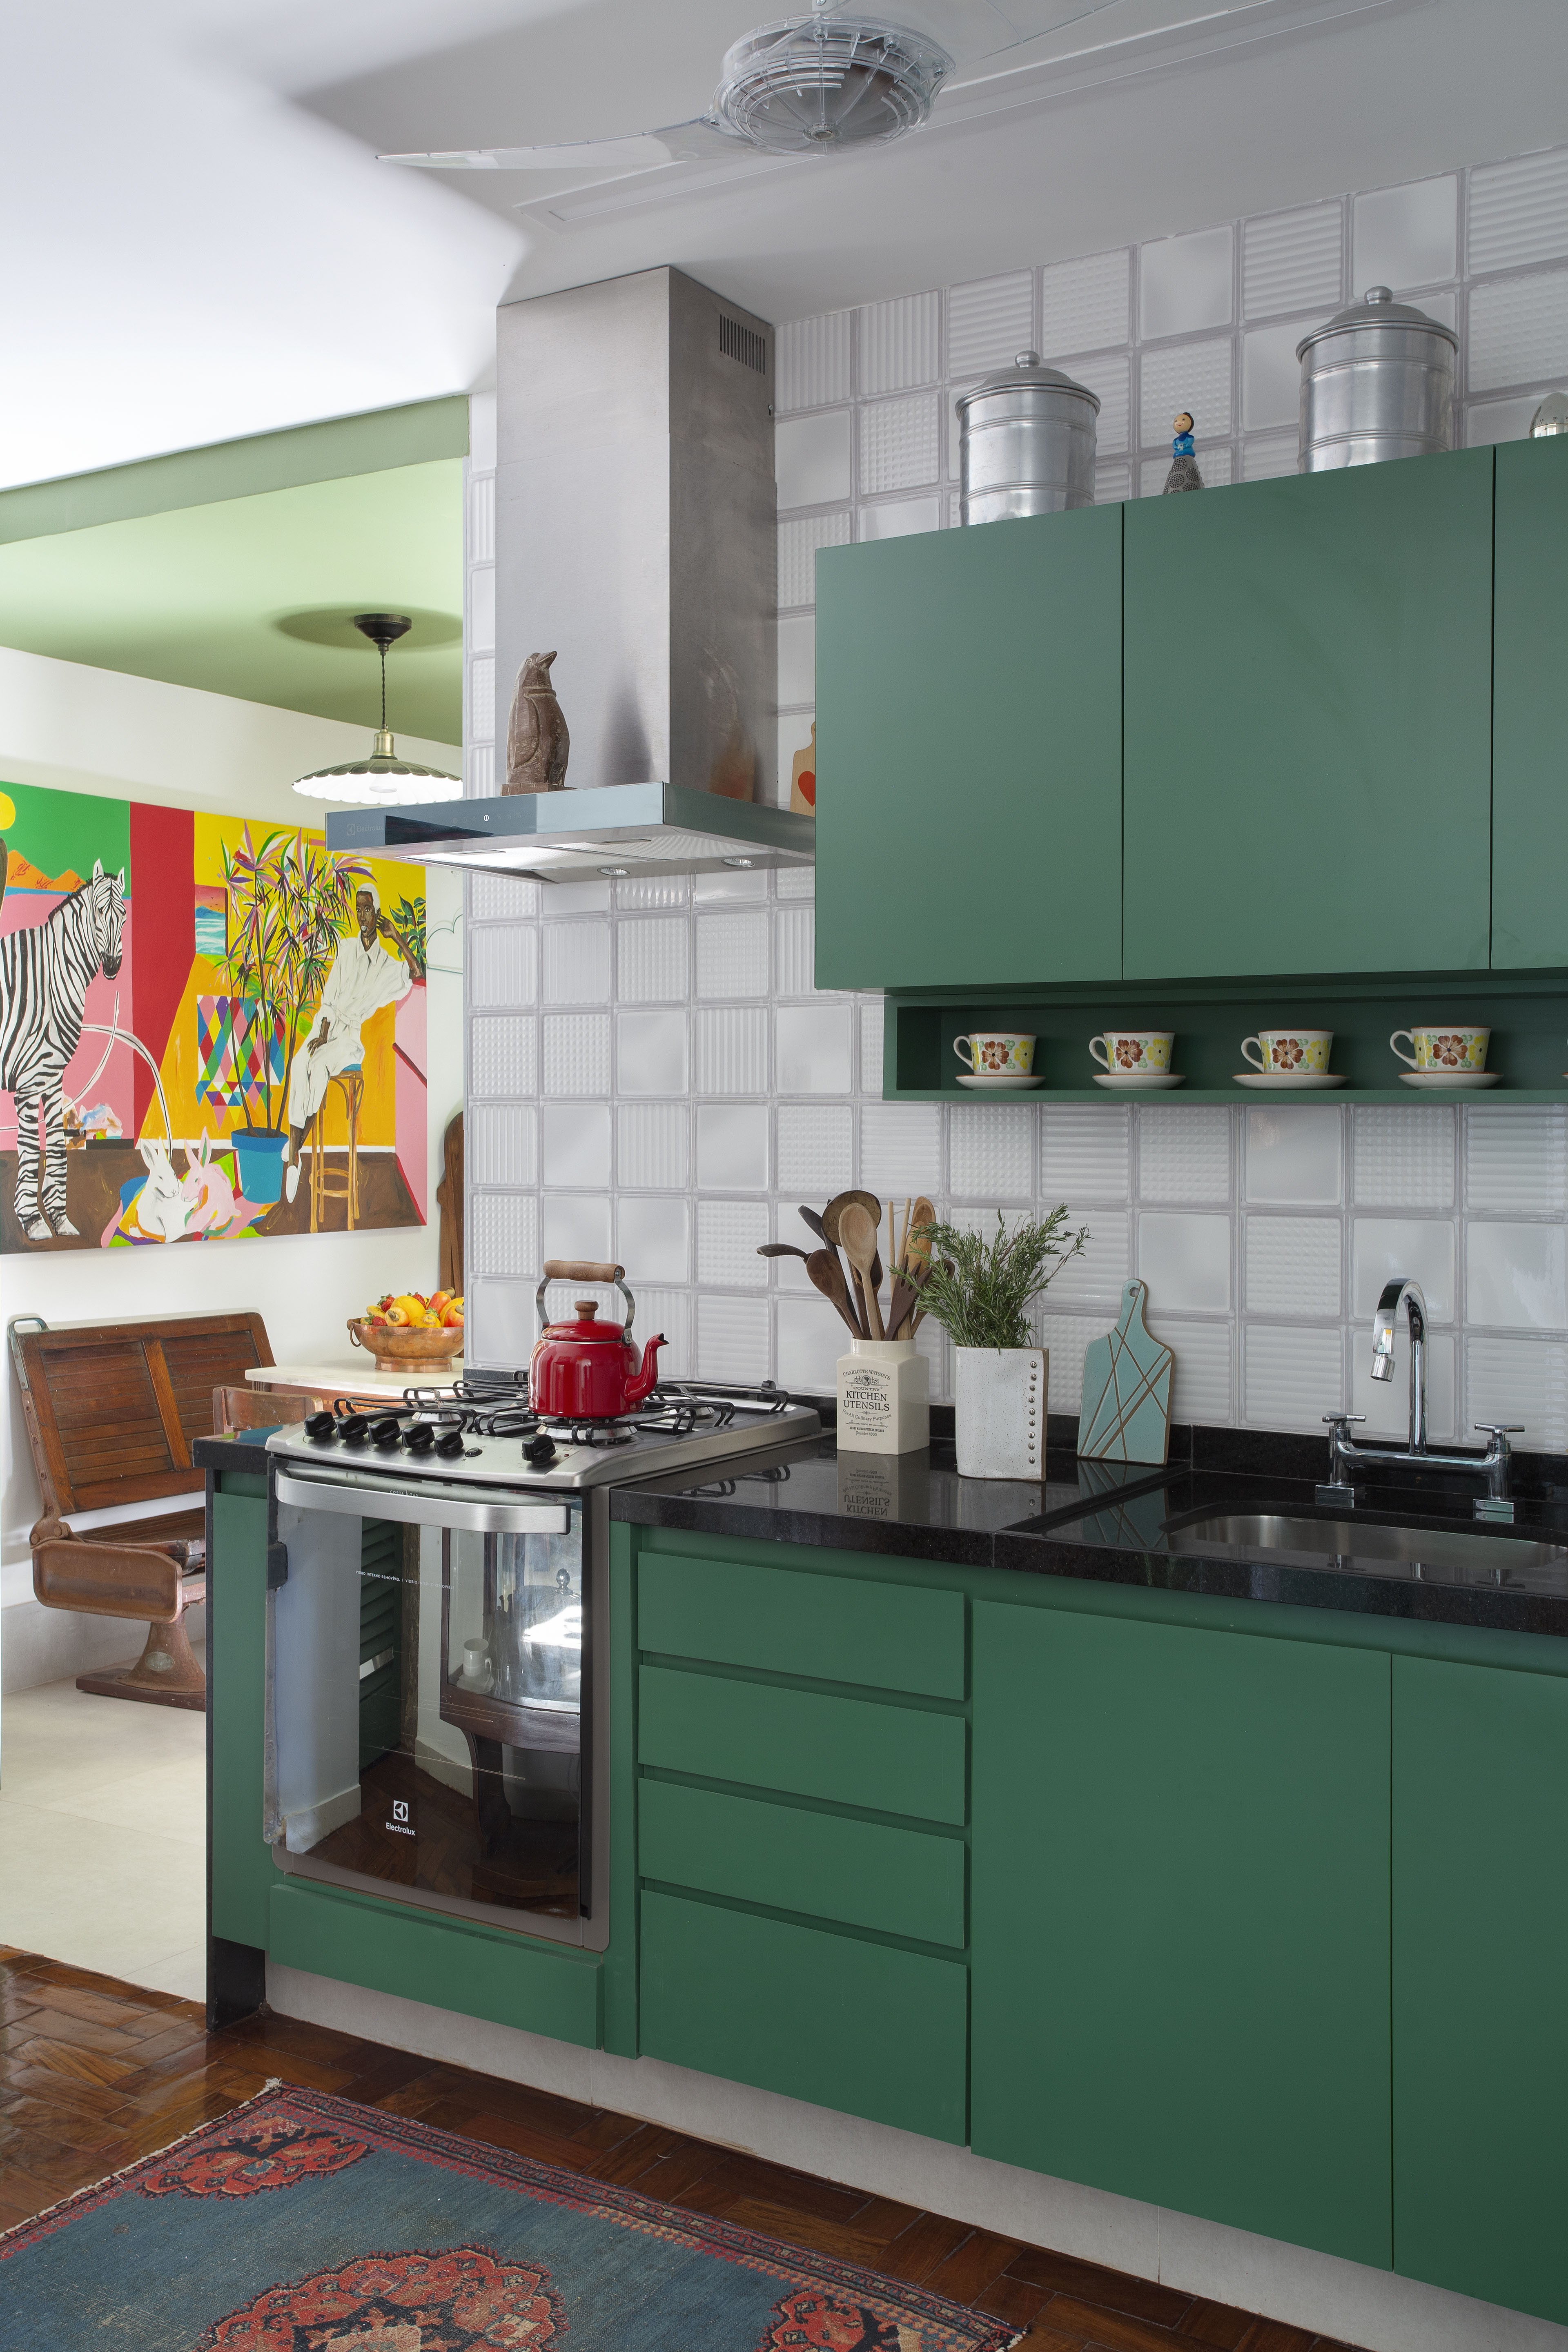 Décor do dia: cozinha tem marcenaria colorida e muita memória afetiva (Foto: Juliano Colodeti/ MCA Estúdio)